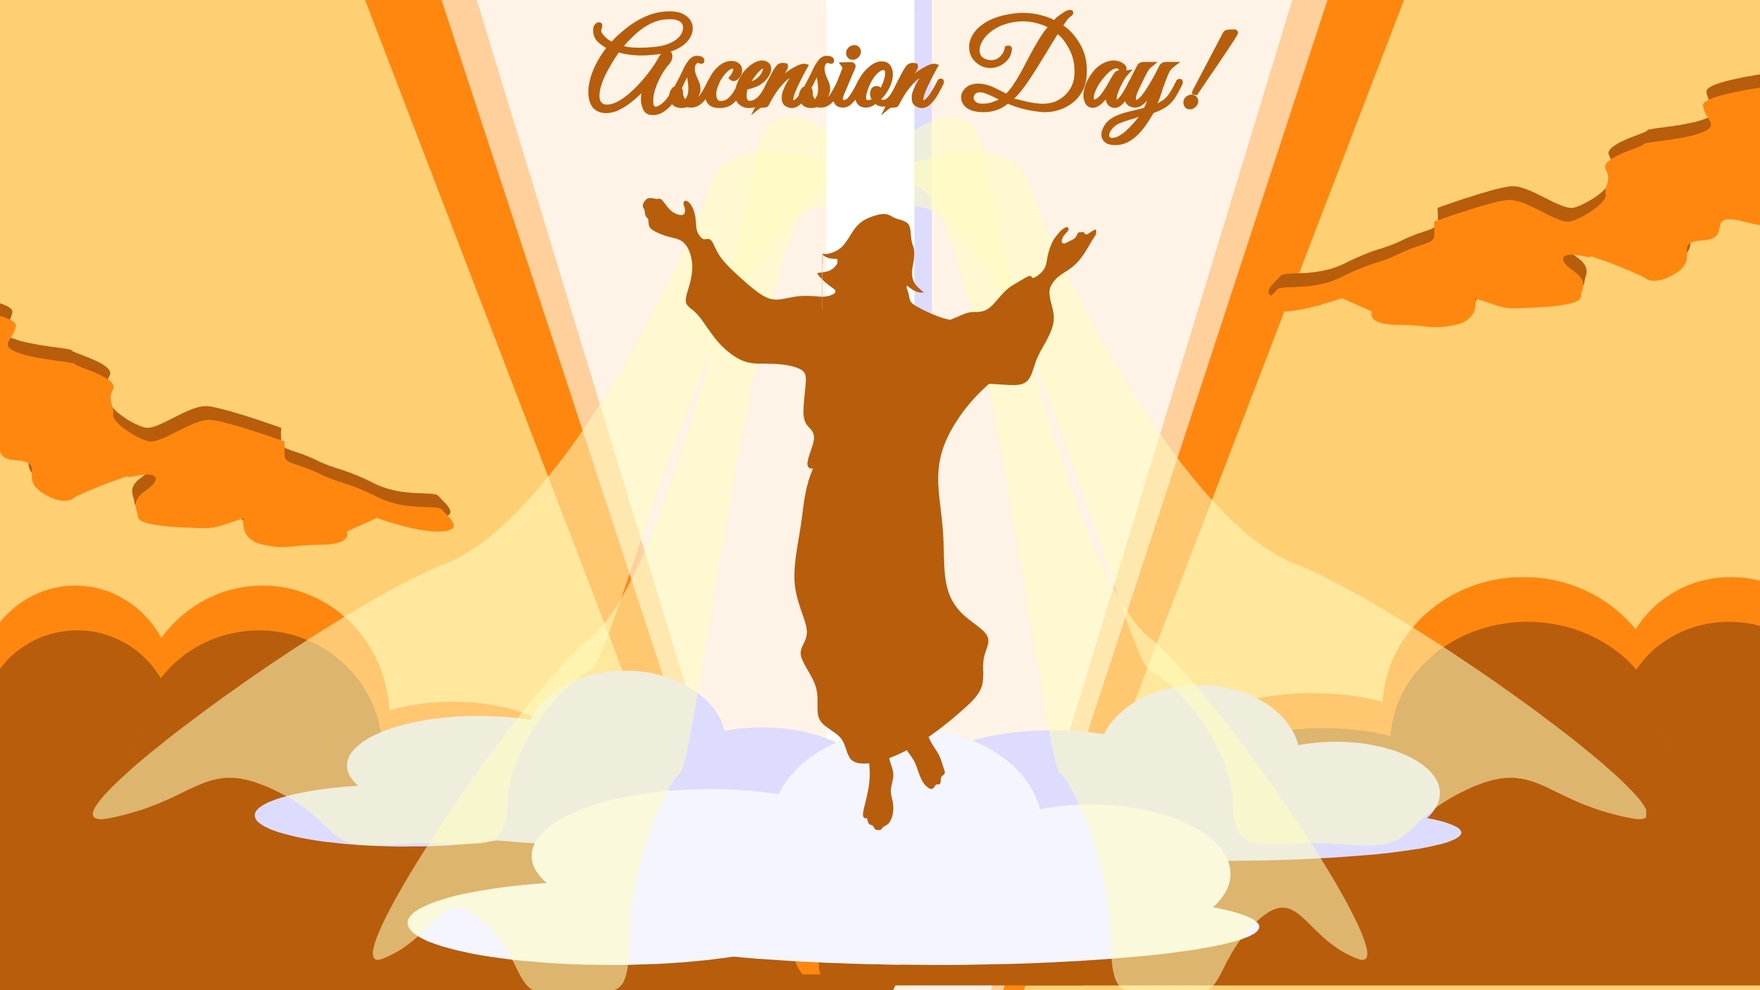 Free Ascension Day Design Background in PDF, Illustrator, PSD, EPS, SVG, JPG, PNG